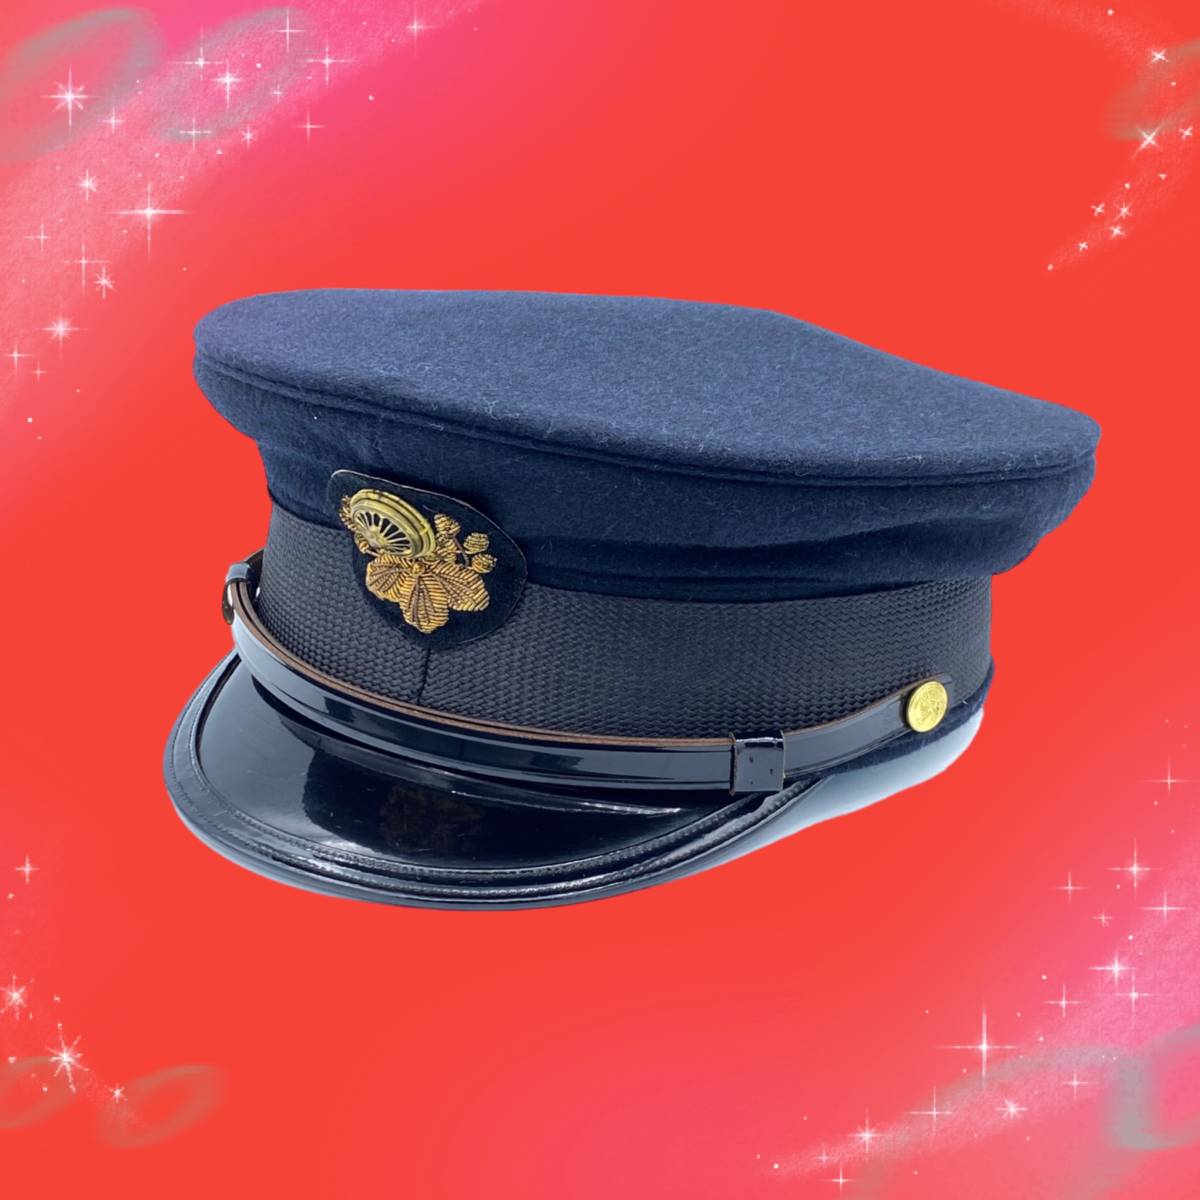 Bana8◇①日本国有鉄道 SL機関士帽 赤タグ 帽子 後ろ調整紐付 制帽 